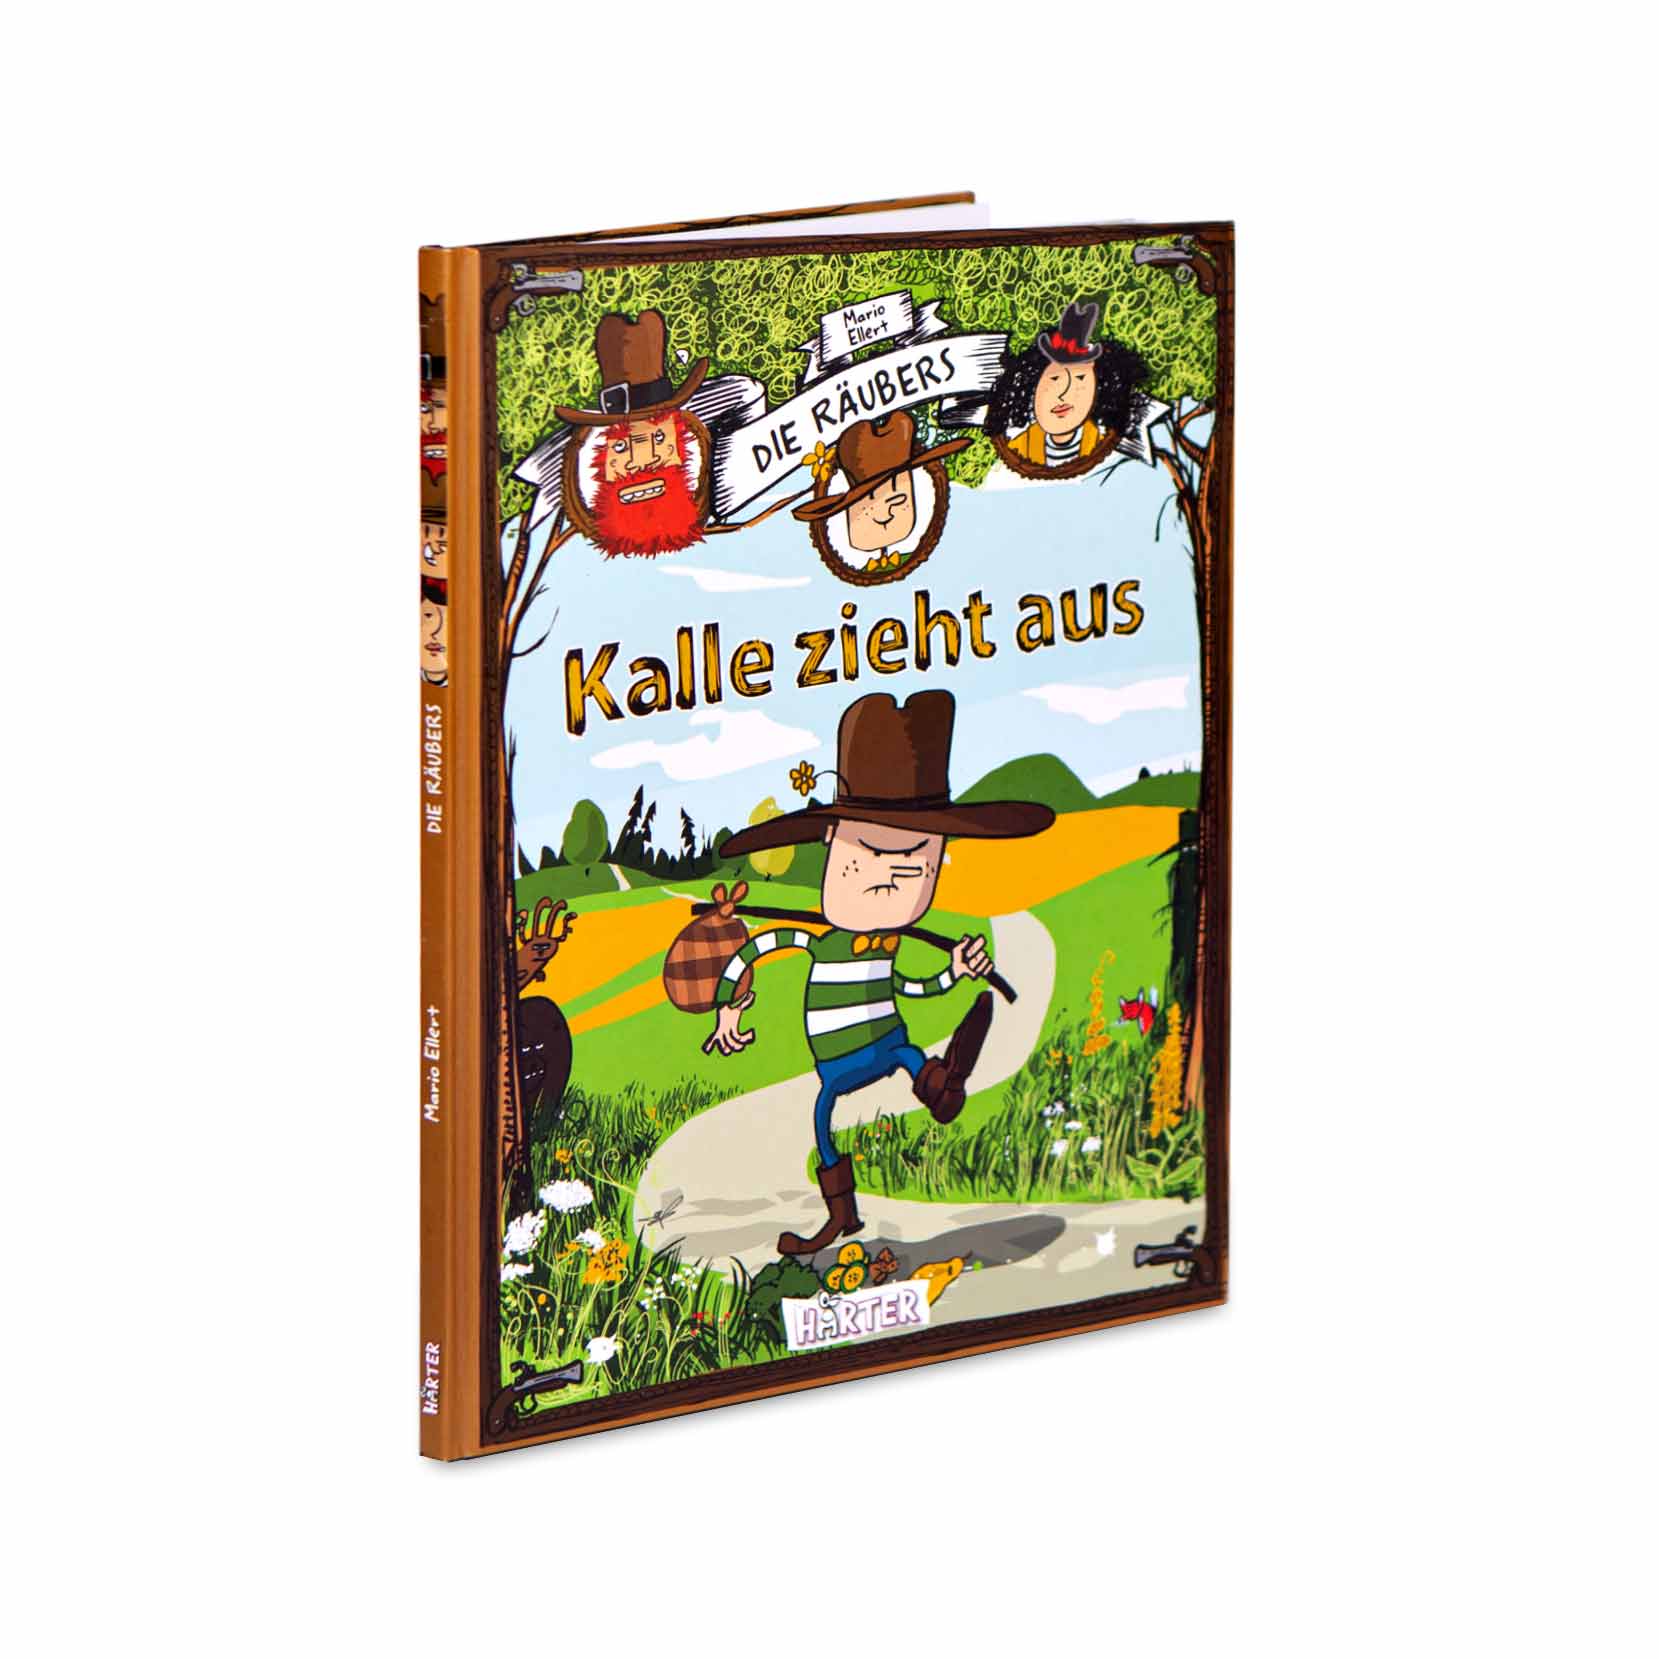 Die Räubers – Kalle zieht aus | Kinderbuch